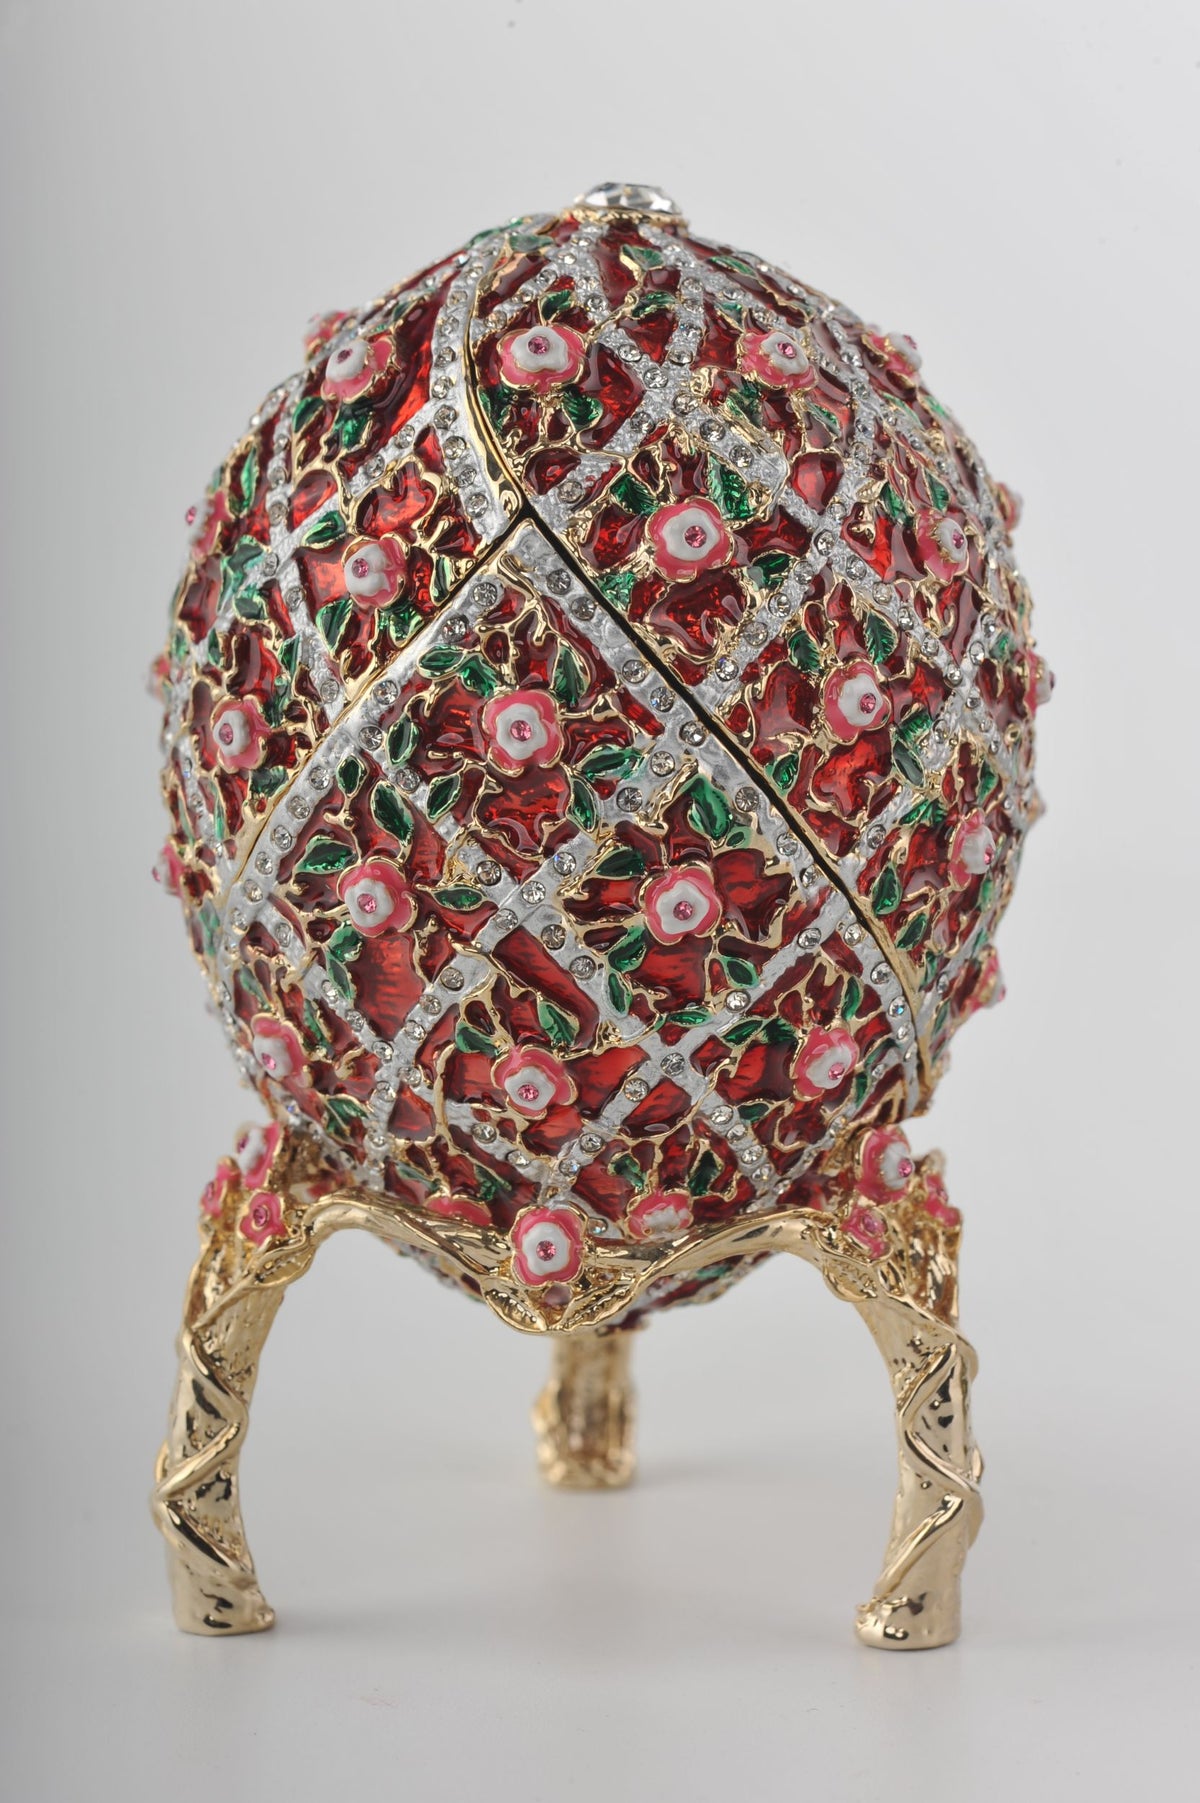 Rosarotes Fabergé-Ei mit bunter Überraschungskugel im Inneren